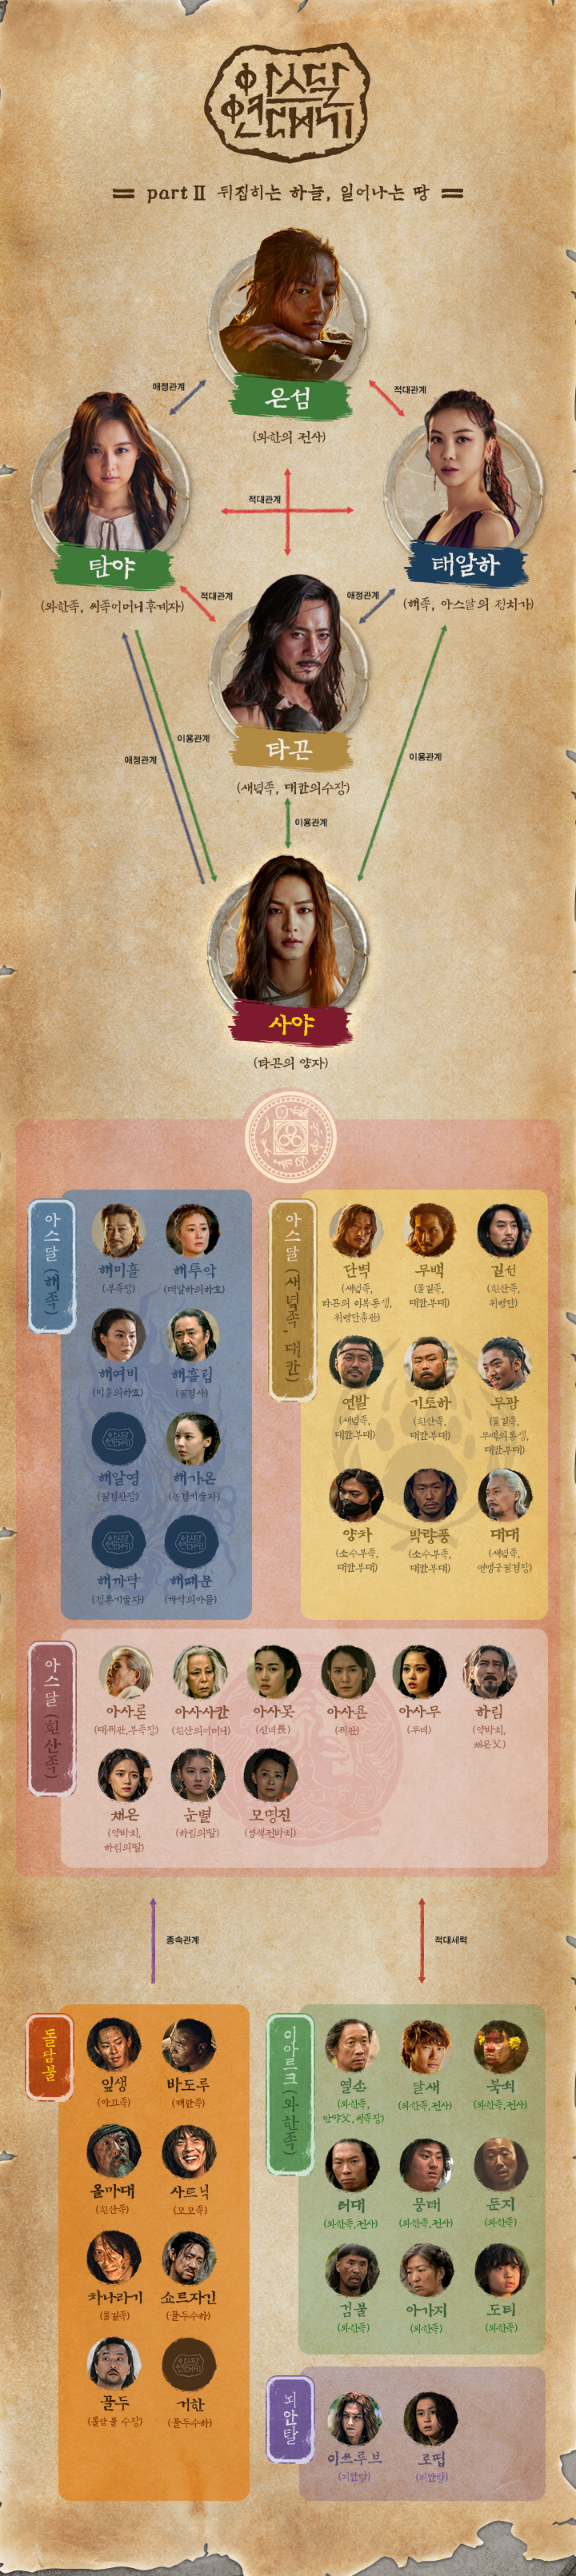 tvN‘아스달 연대기’홈페이지 인물관계도 사진캡처